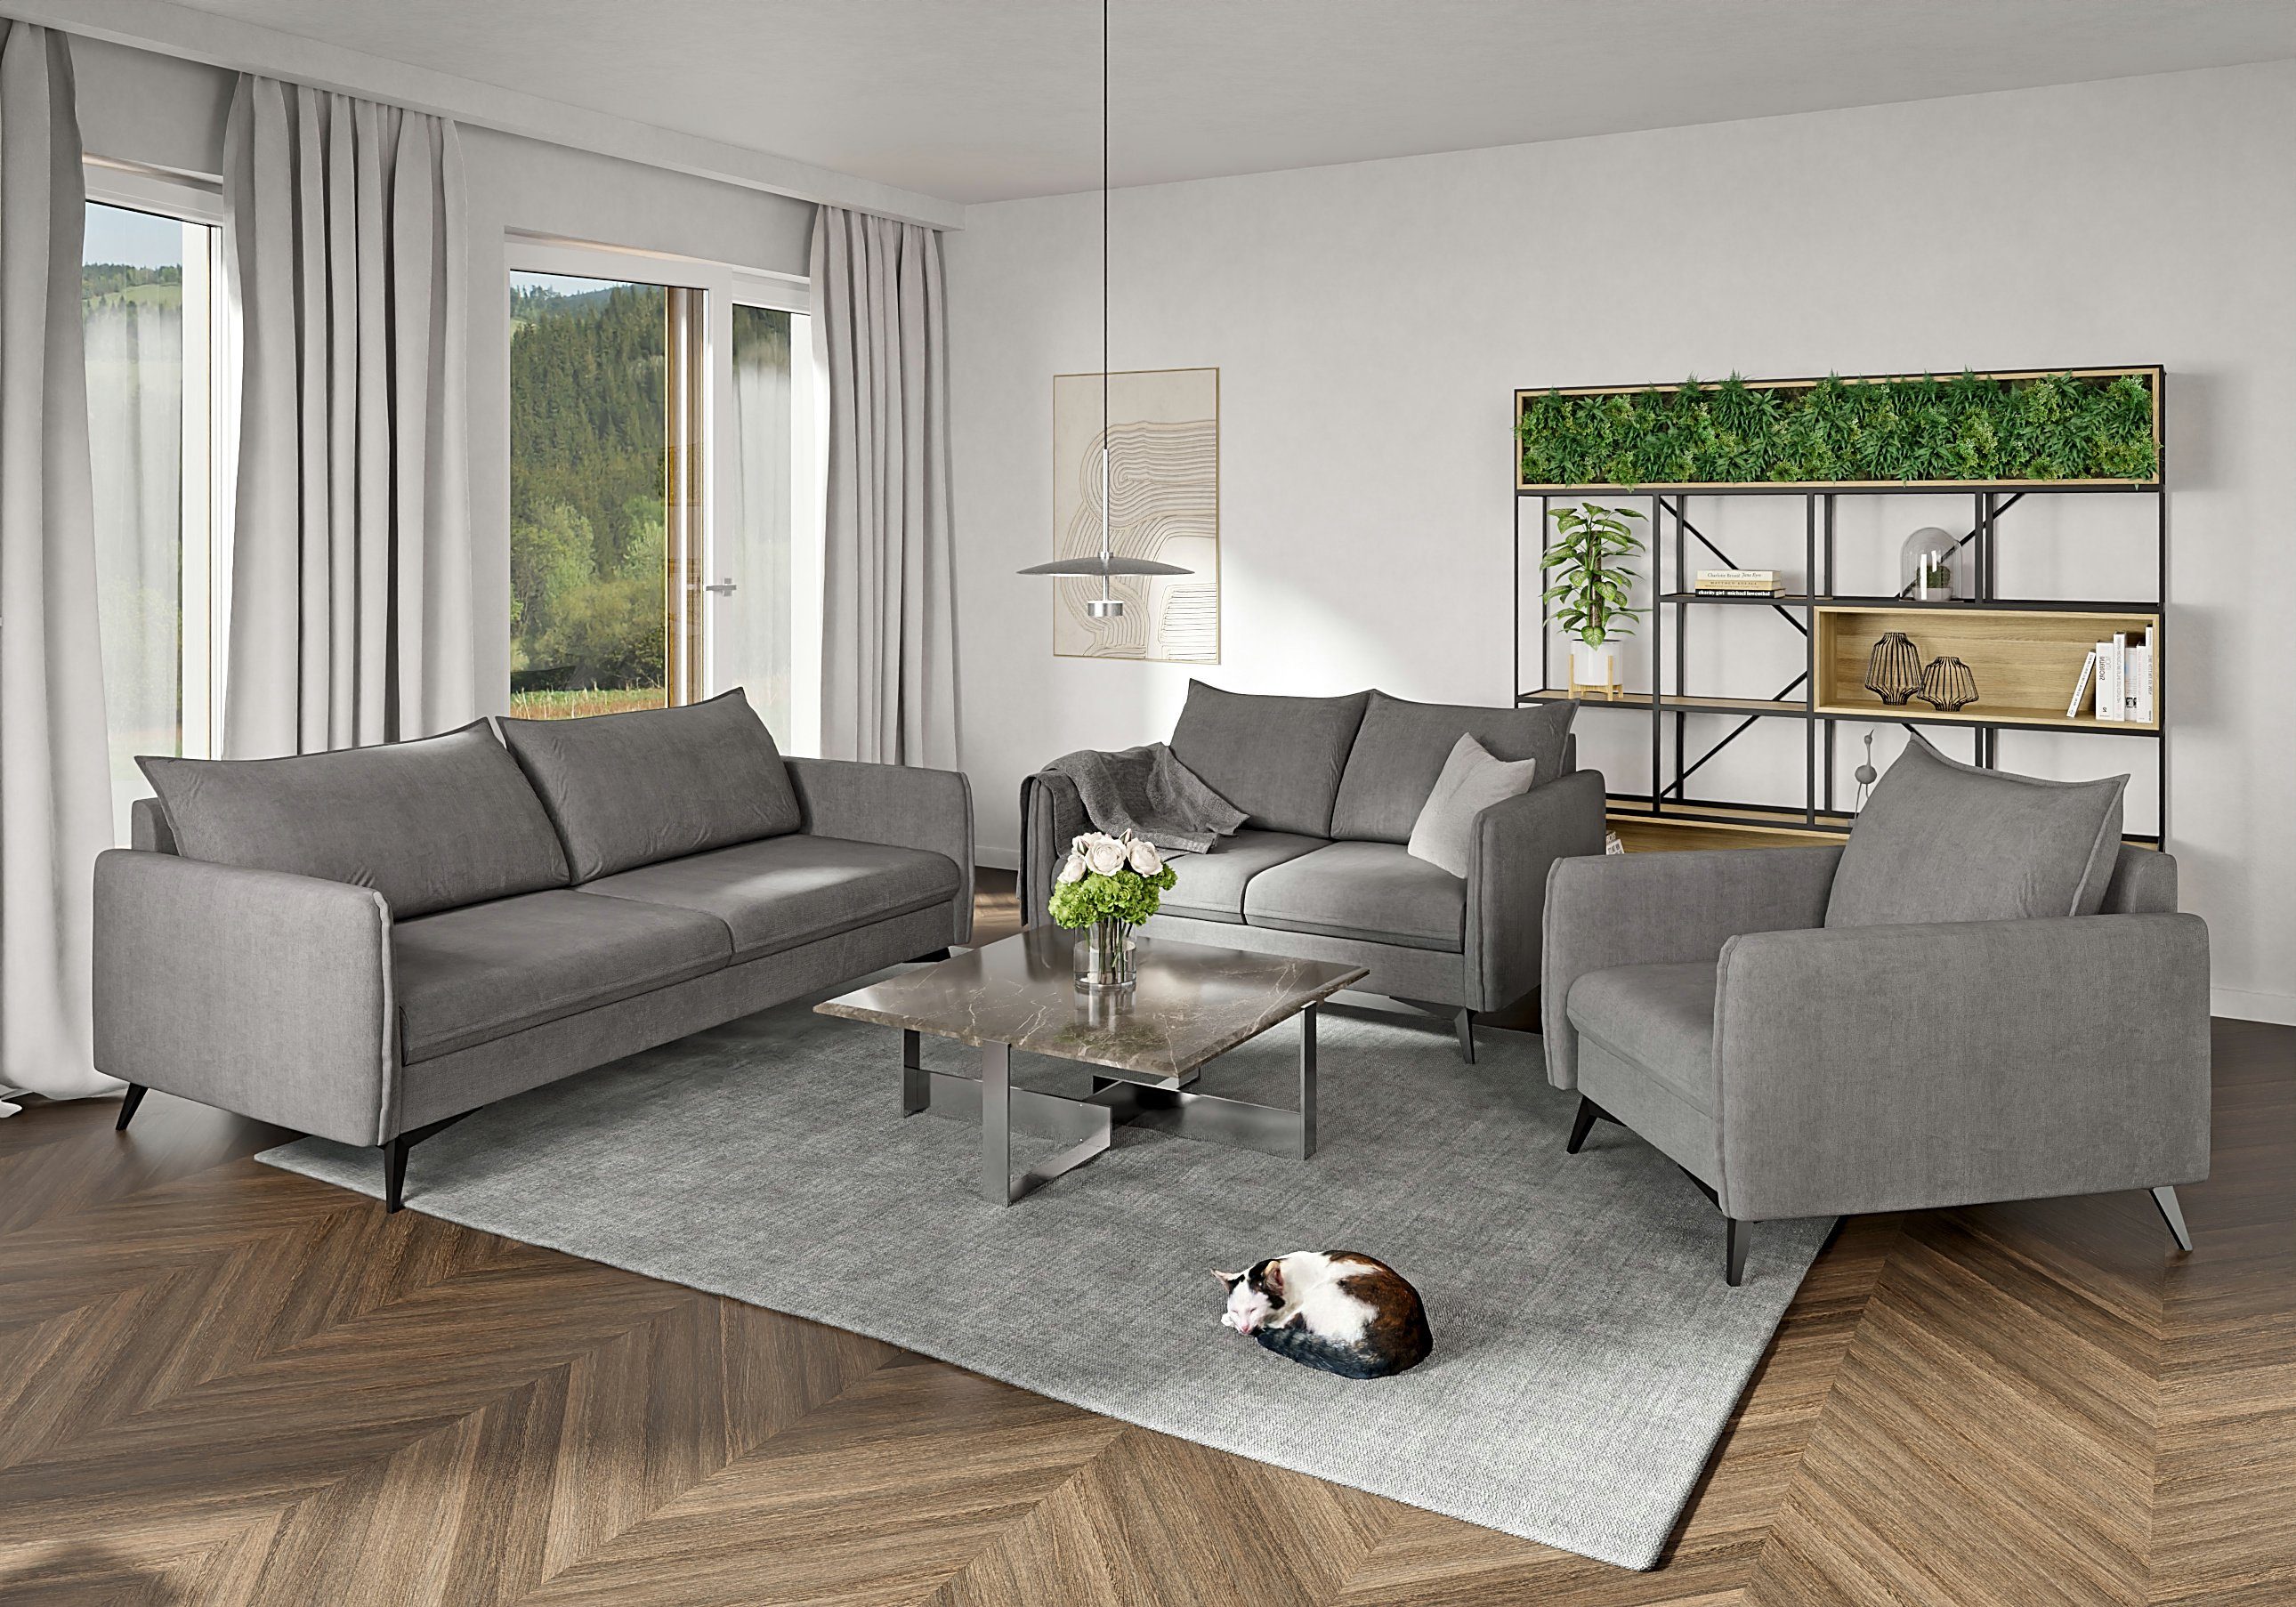 mit Schwarz Wellenfederung S-Style 2-Sitzer Sofa Grau mit Modernes Metall Füßen, Azalea Möbel